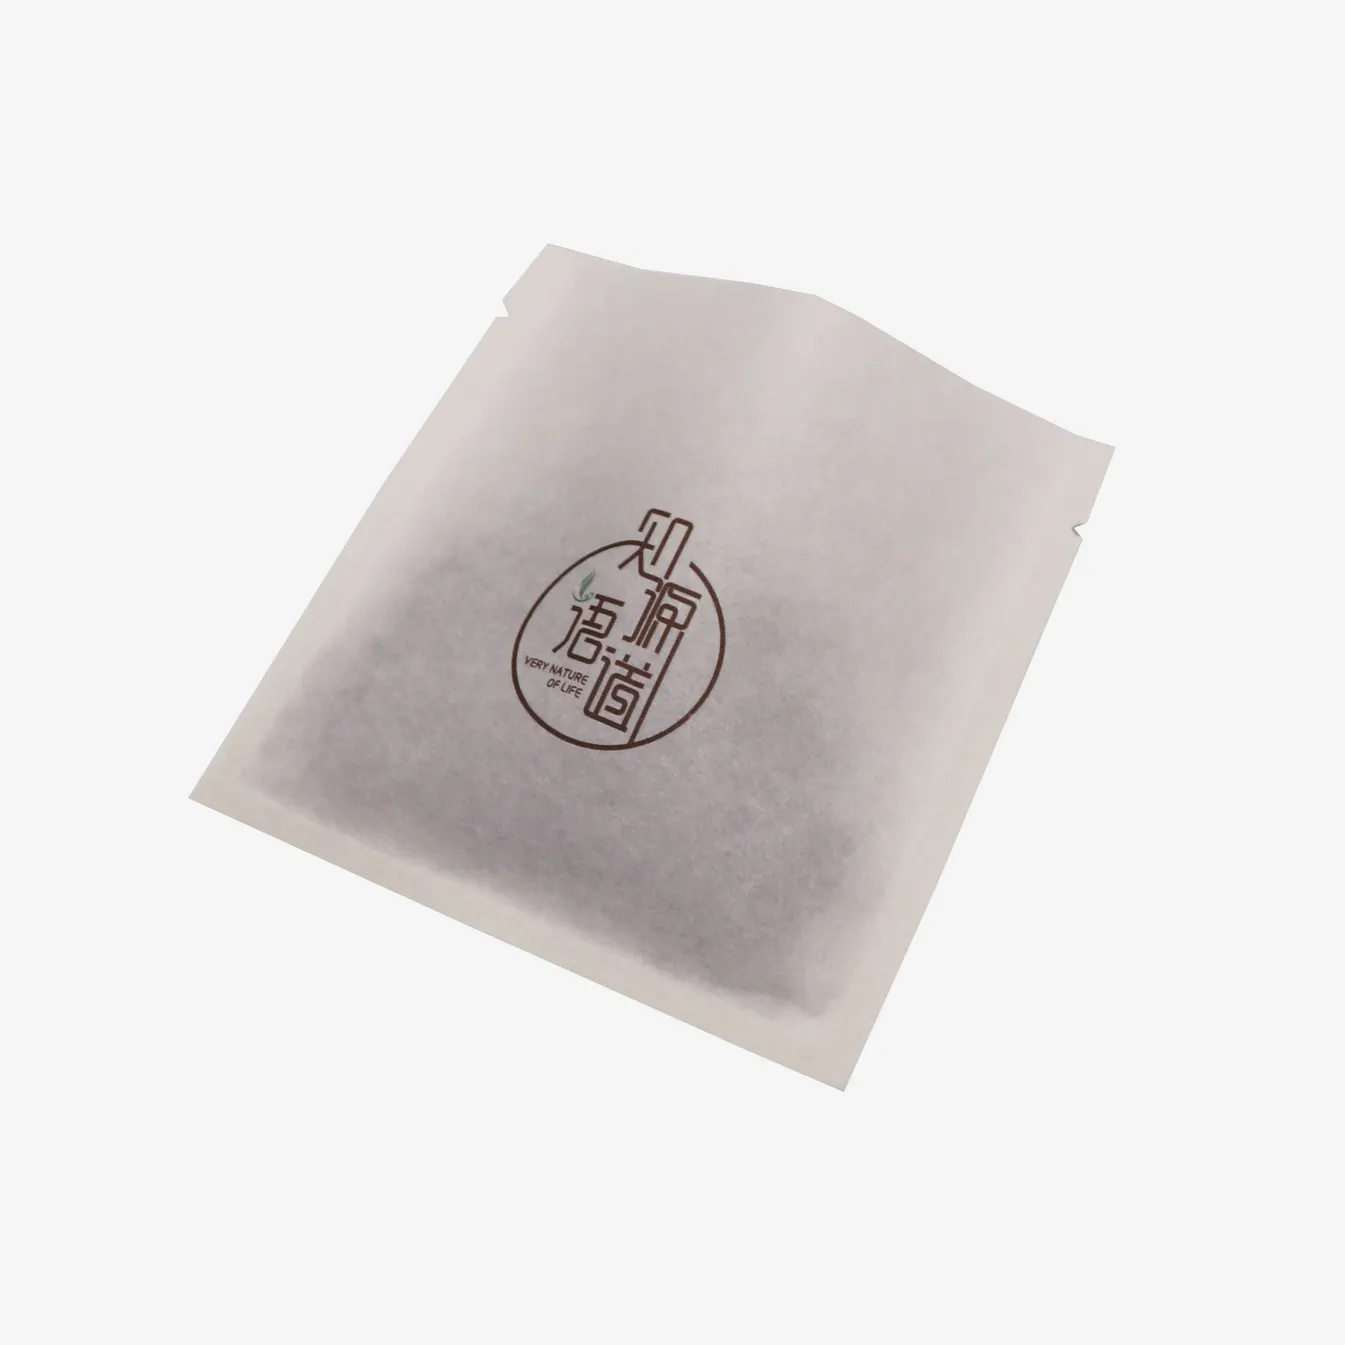 Imballaggio alimentare personalizzato all'ingrosso sacchetti biodegradabili busta di carta bustina di tè involucro di abbigliamento per vestiti cibo t-shirt caramelle